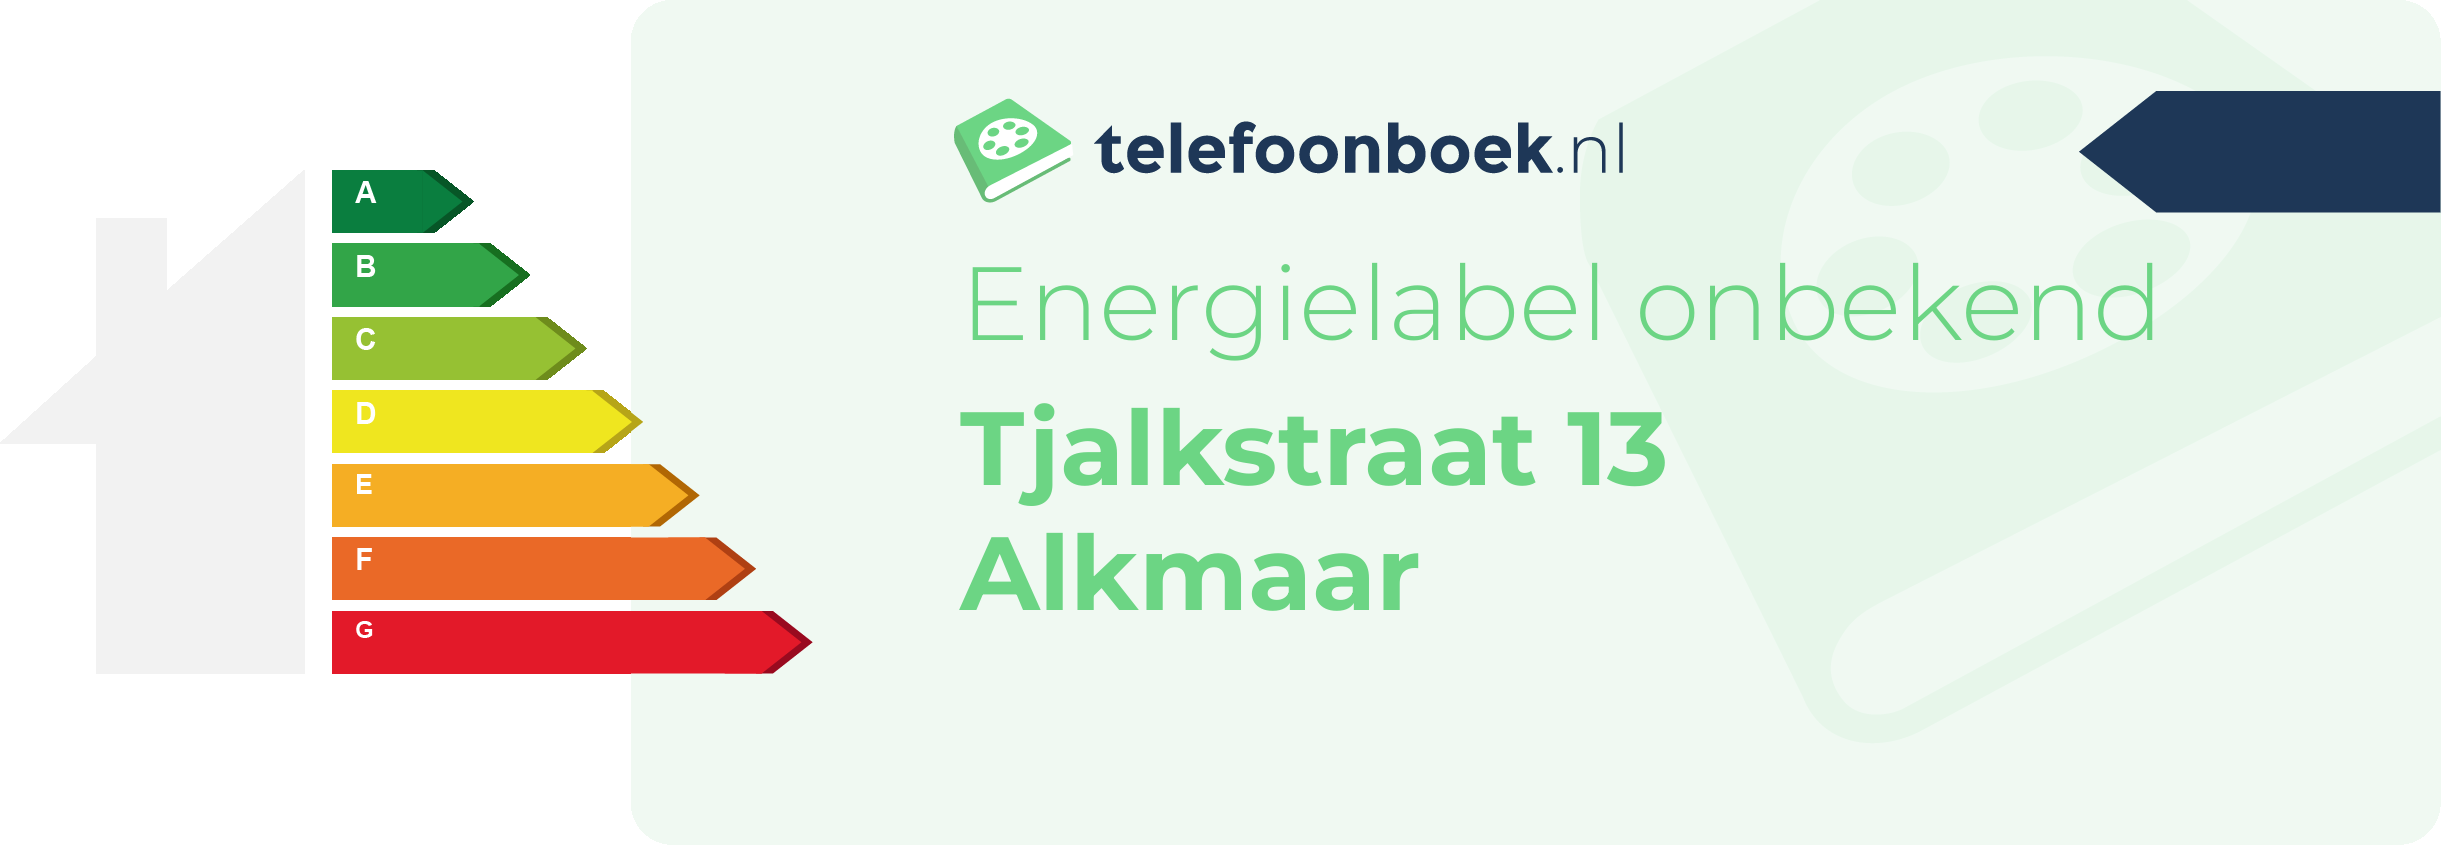 Energielabel Tjalkstraat 13 Alkmaar